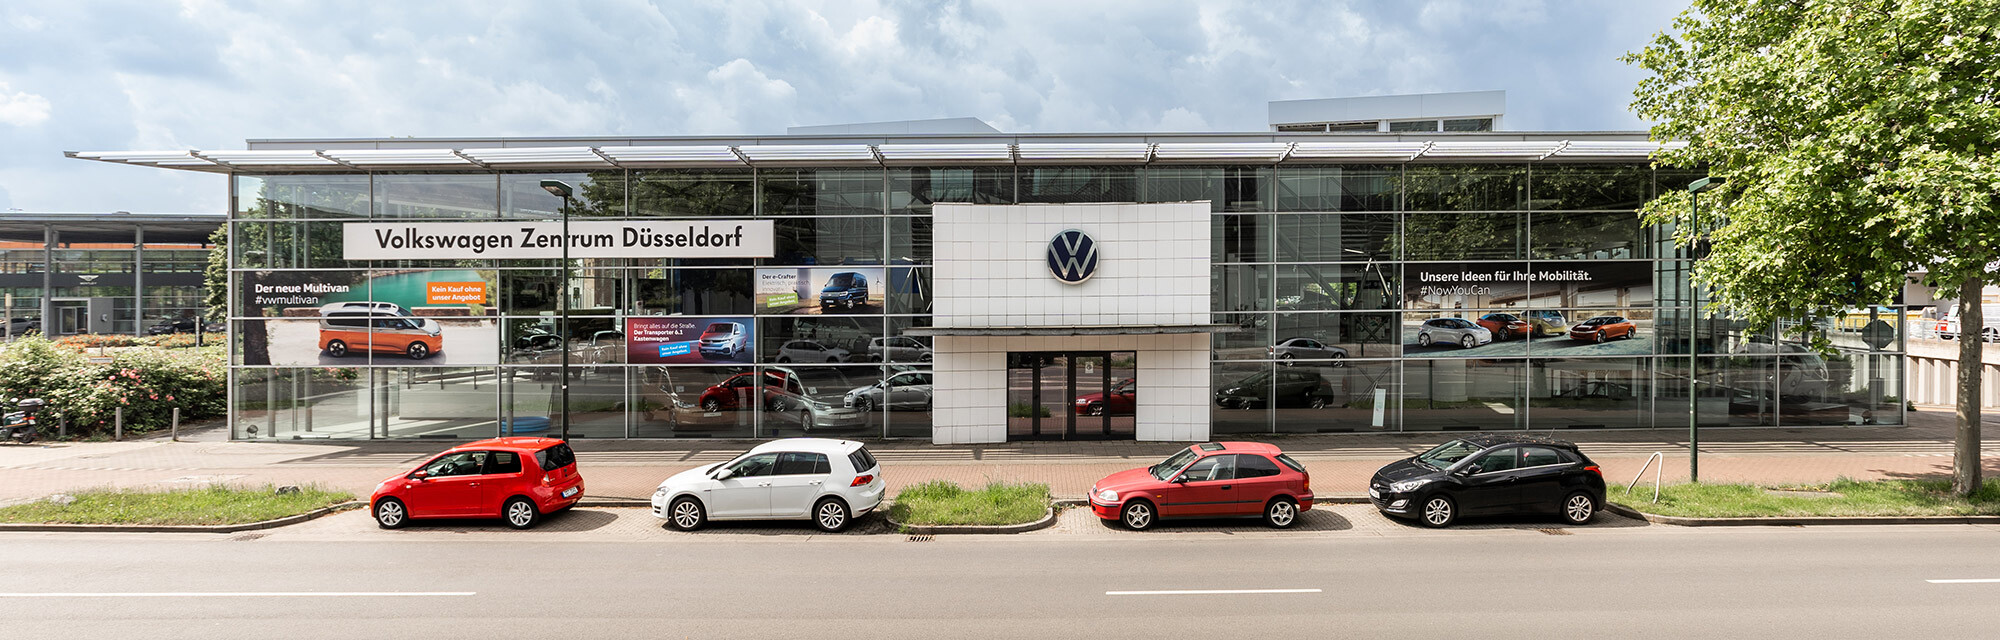 Volkswagen Zentrum Düsseldorf